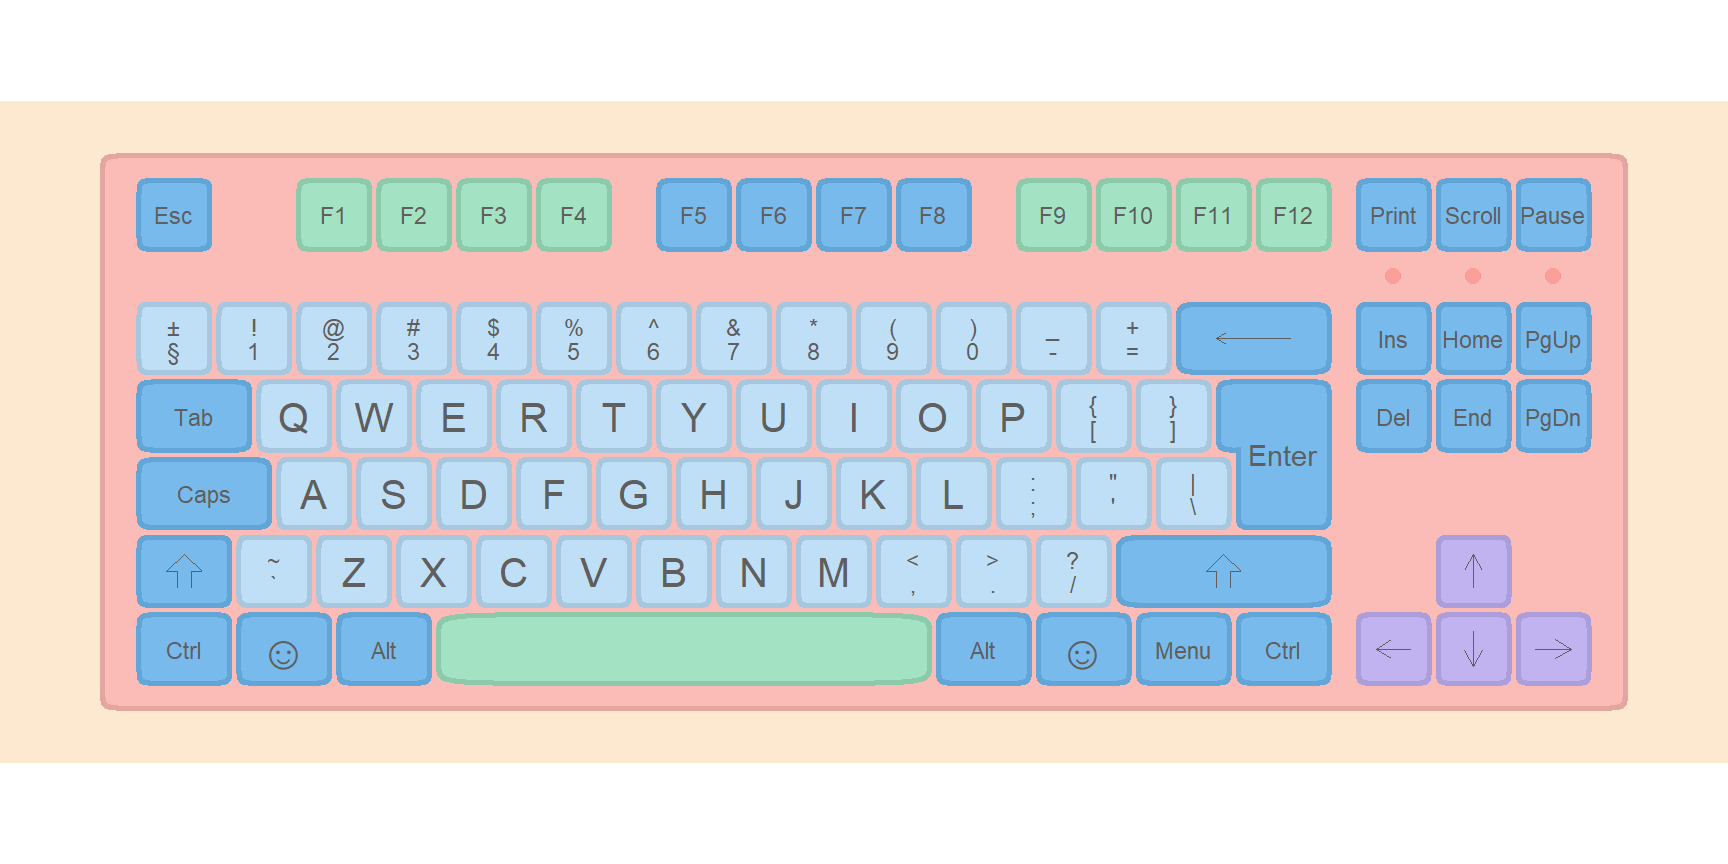 Keyboard layout